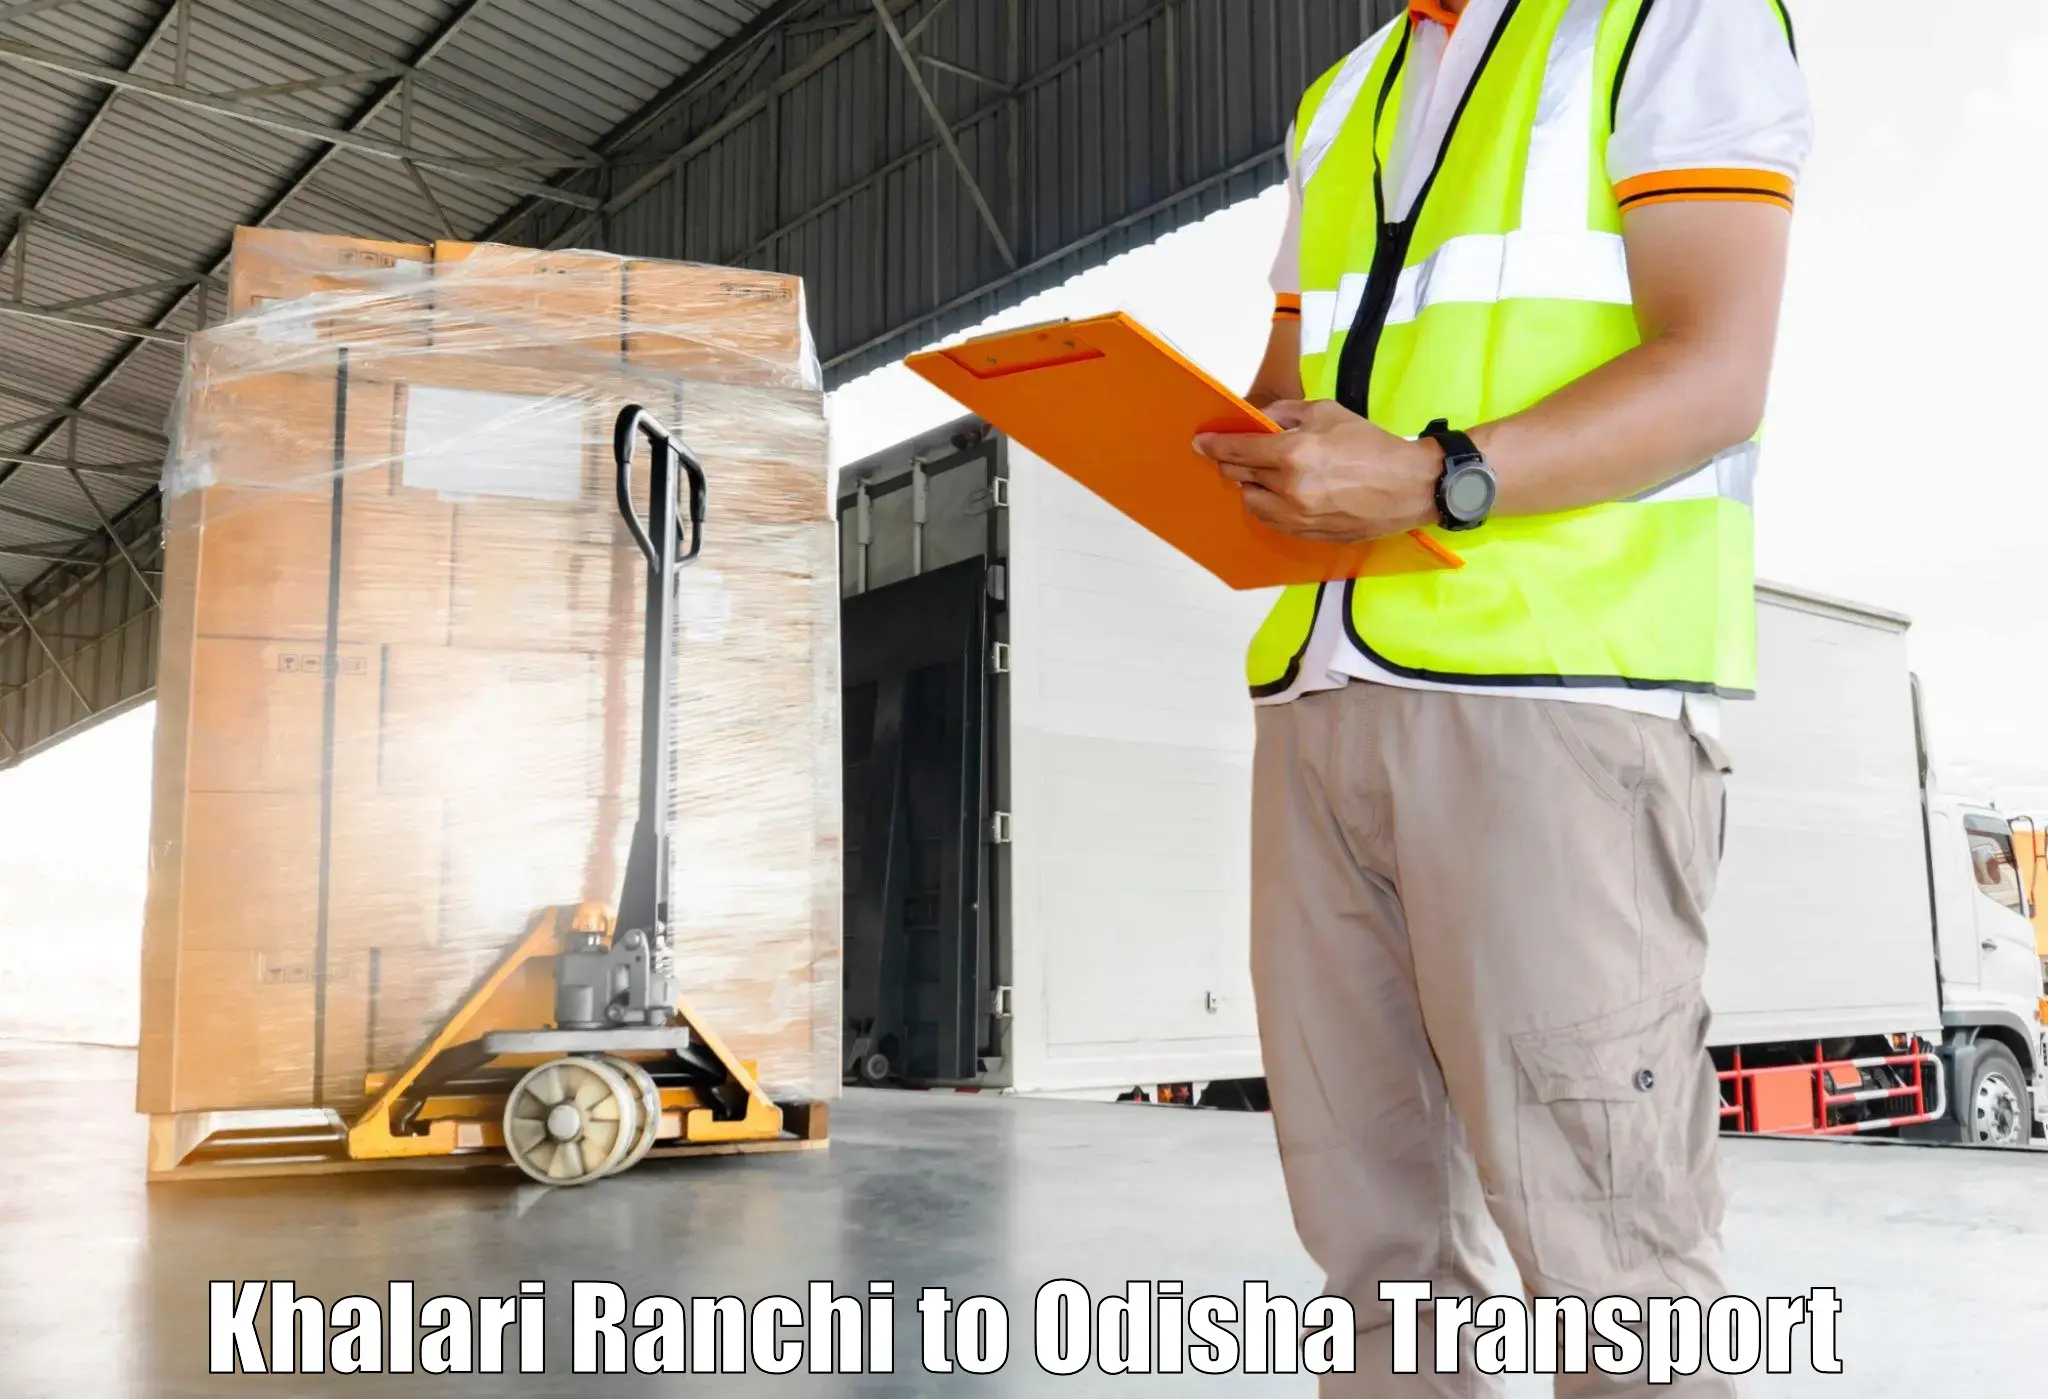 Land transport services Khalari Ranchi to Bhubaneswar